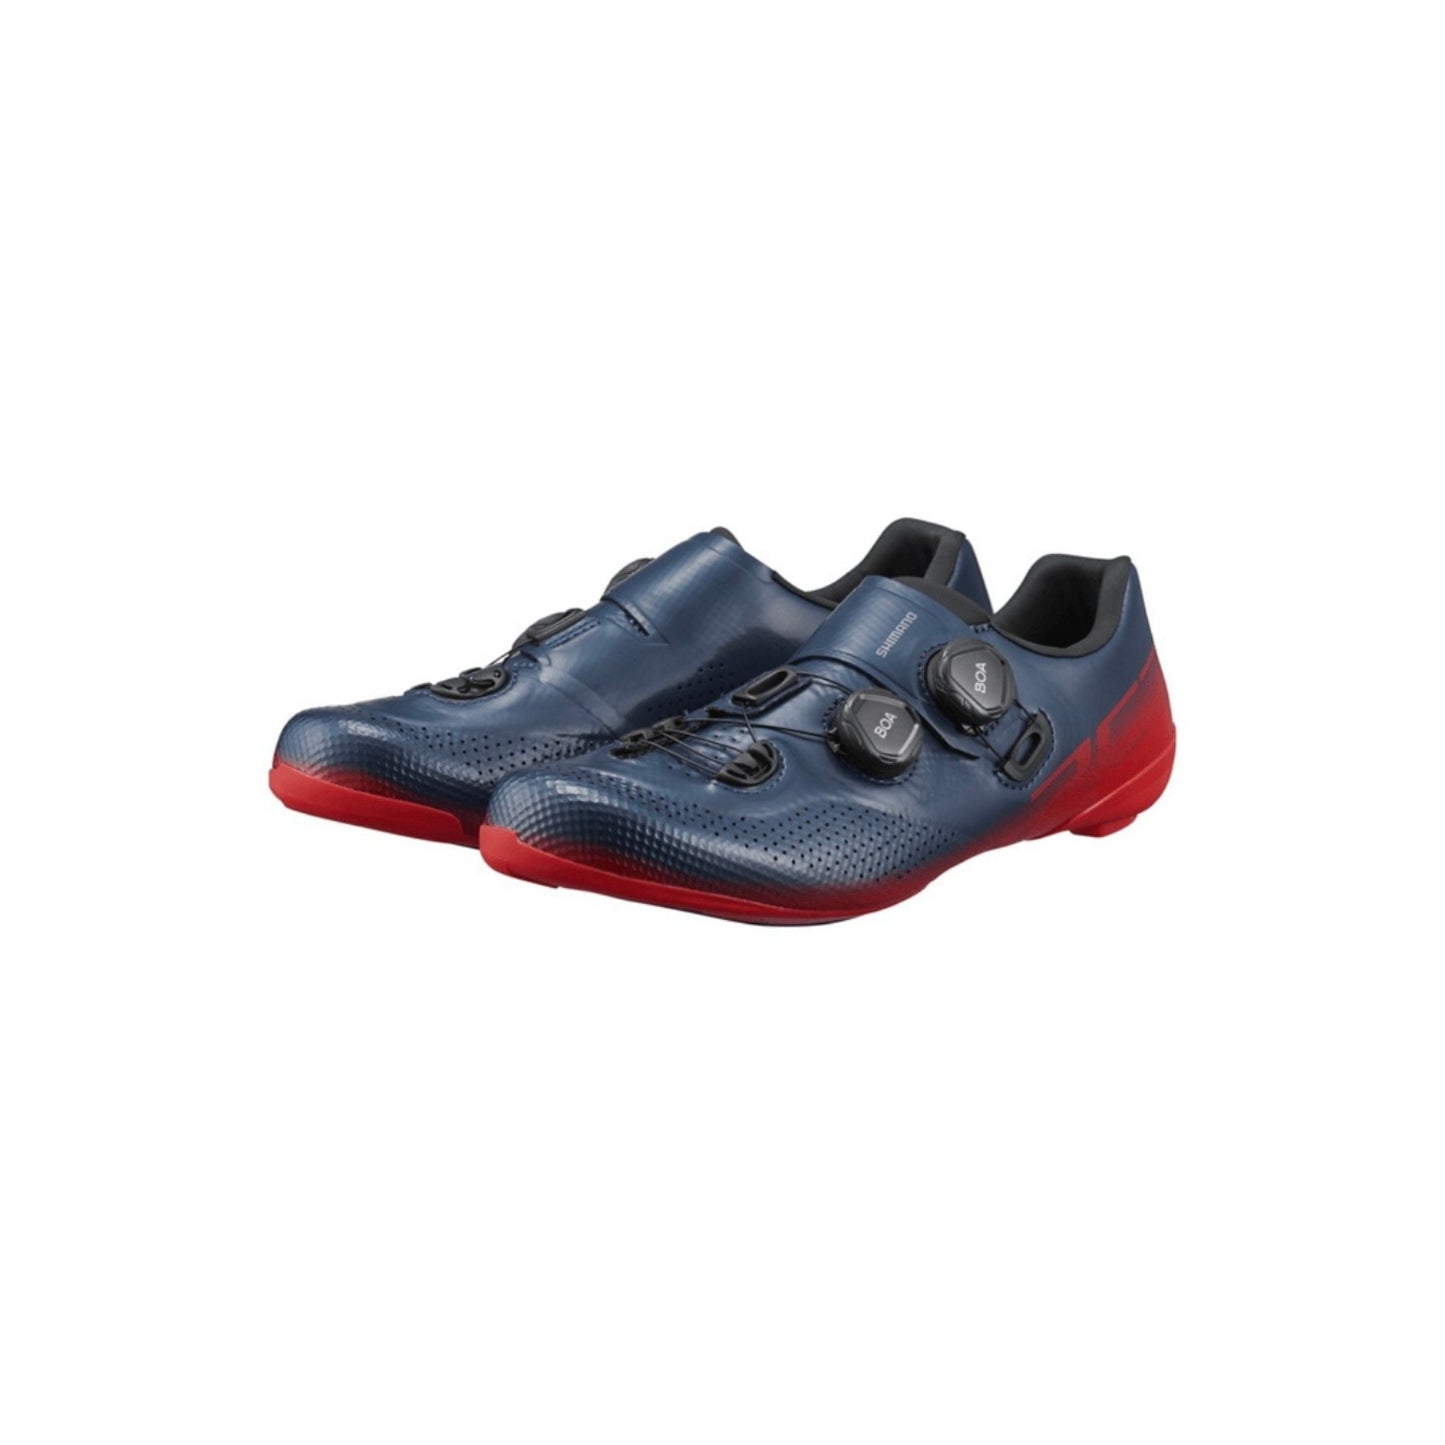 Zapatillas Shimano Rc702 Red-Blue